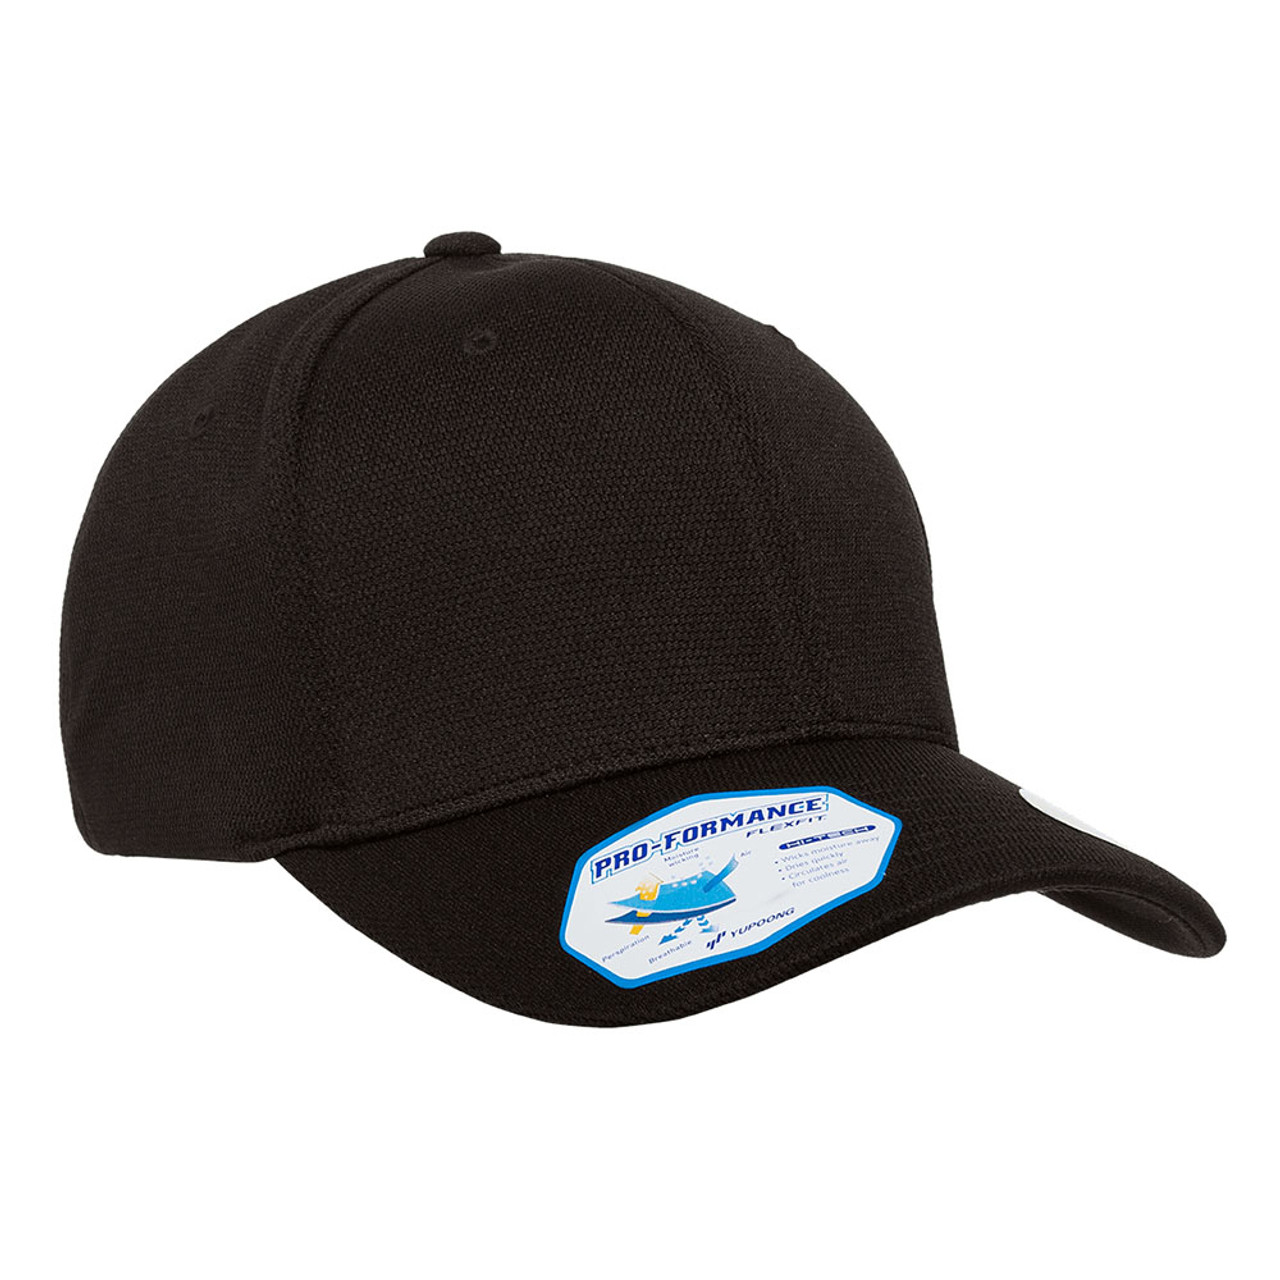 Flexfit Cool & Dry Performance The Jac One - Hat Cap Dozen 